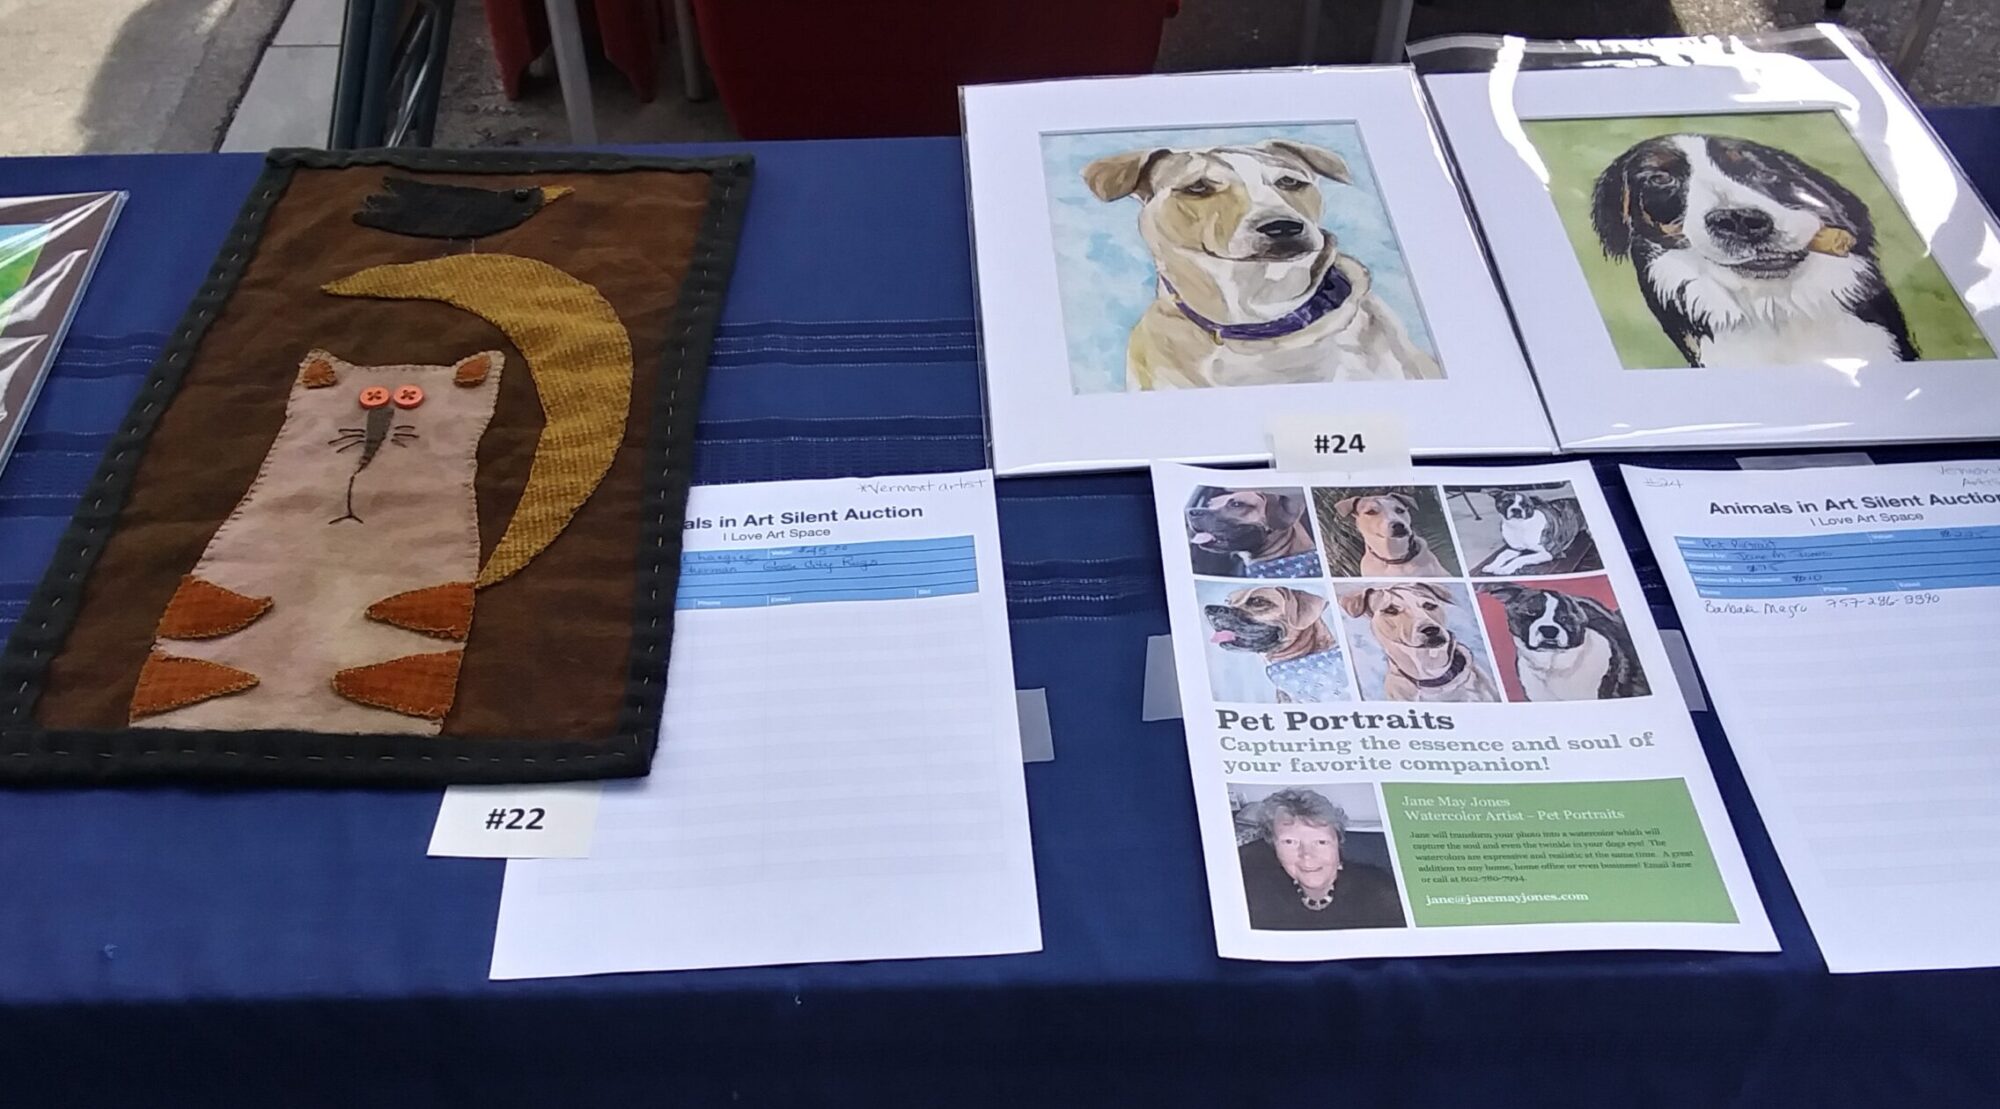 Animals in Art Silent Auction Bid Items